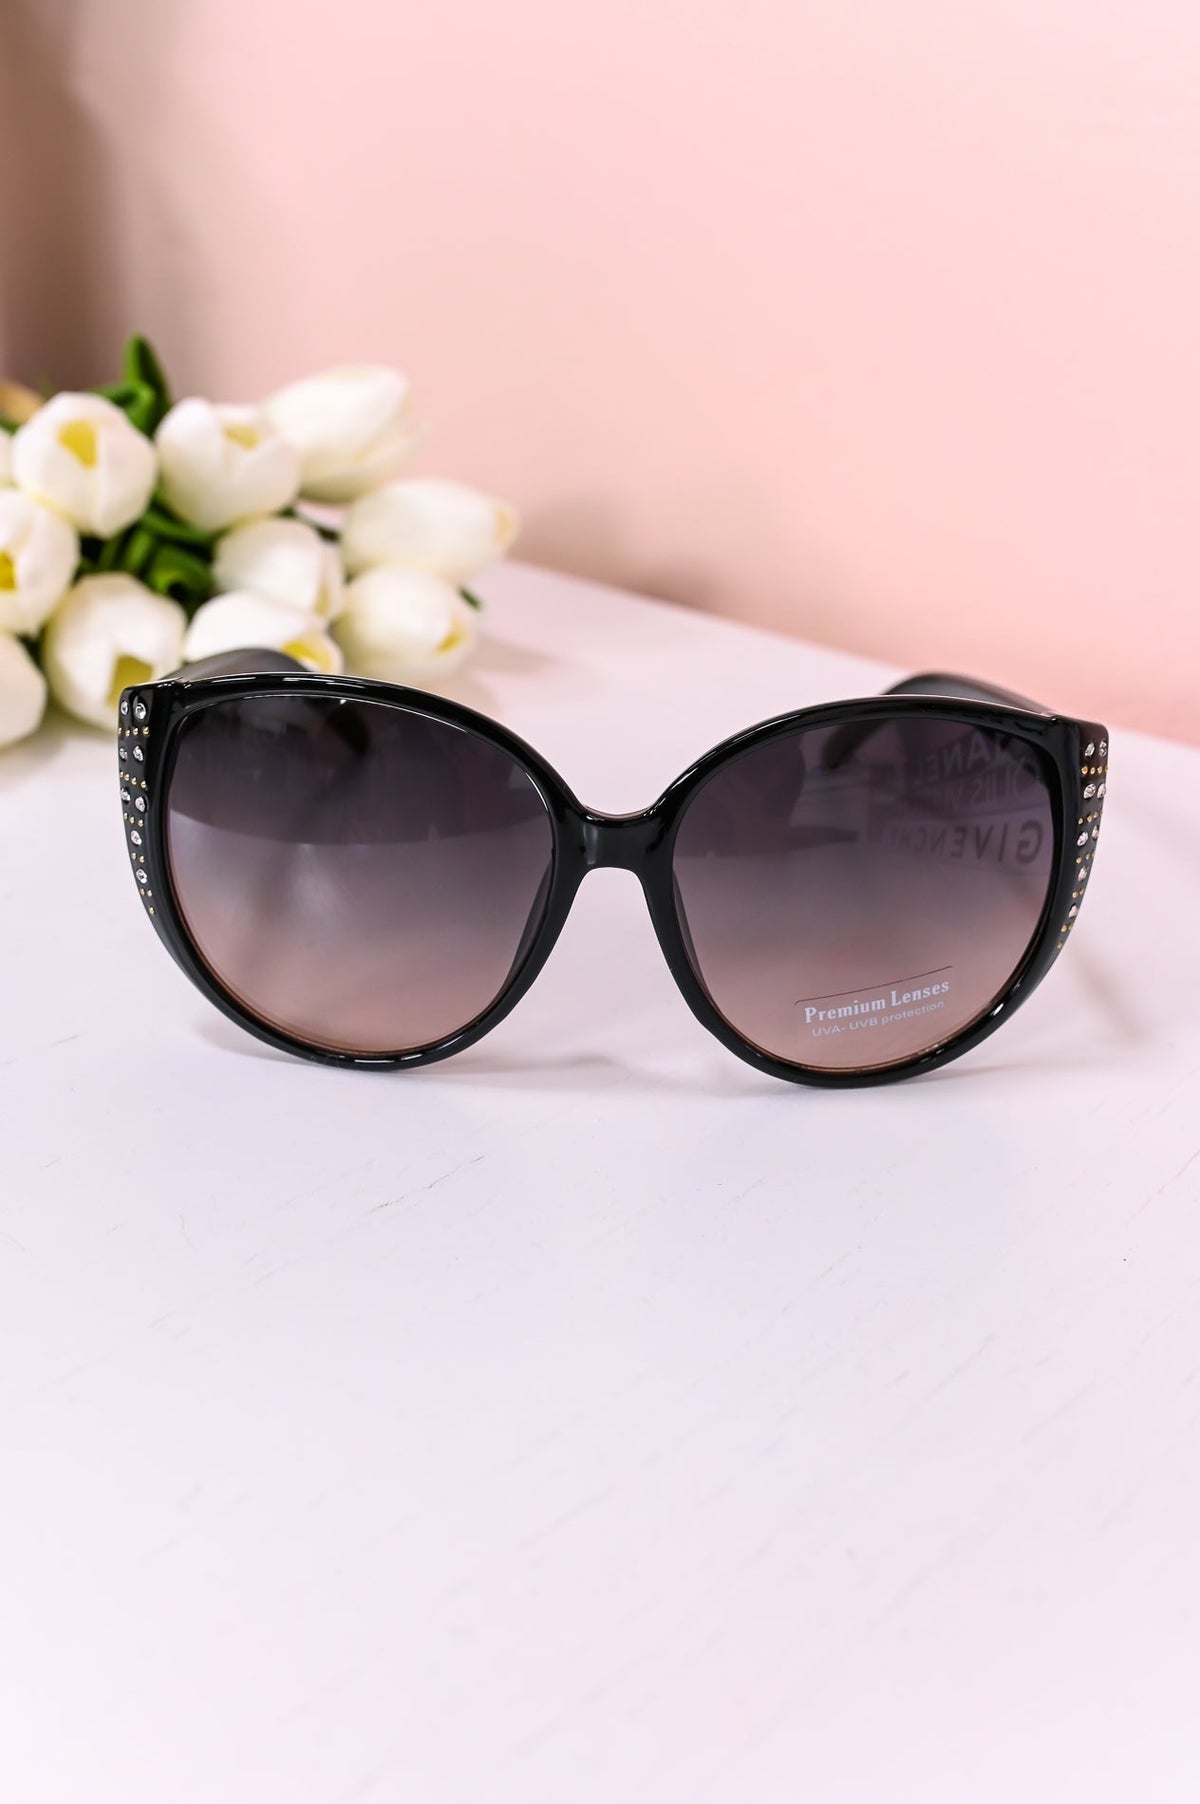 Black Bling/Studded Oversized Cat Eye Lens Sunglasses - SGL337BK